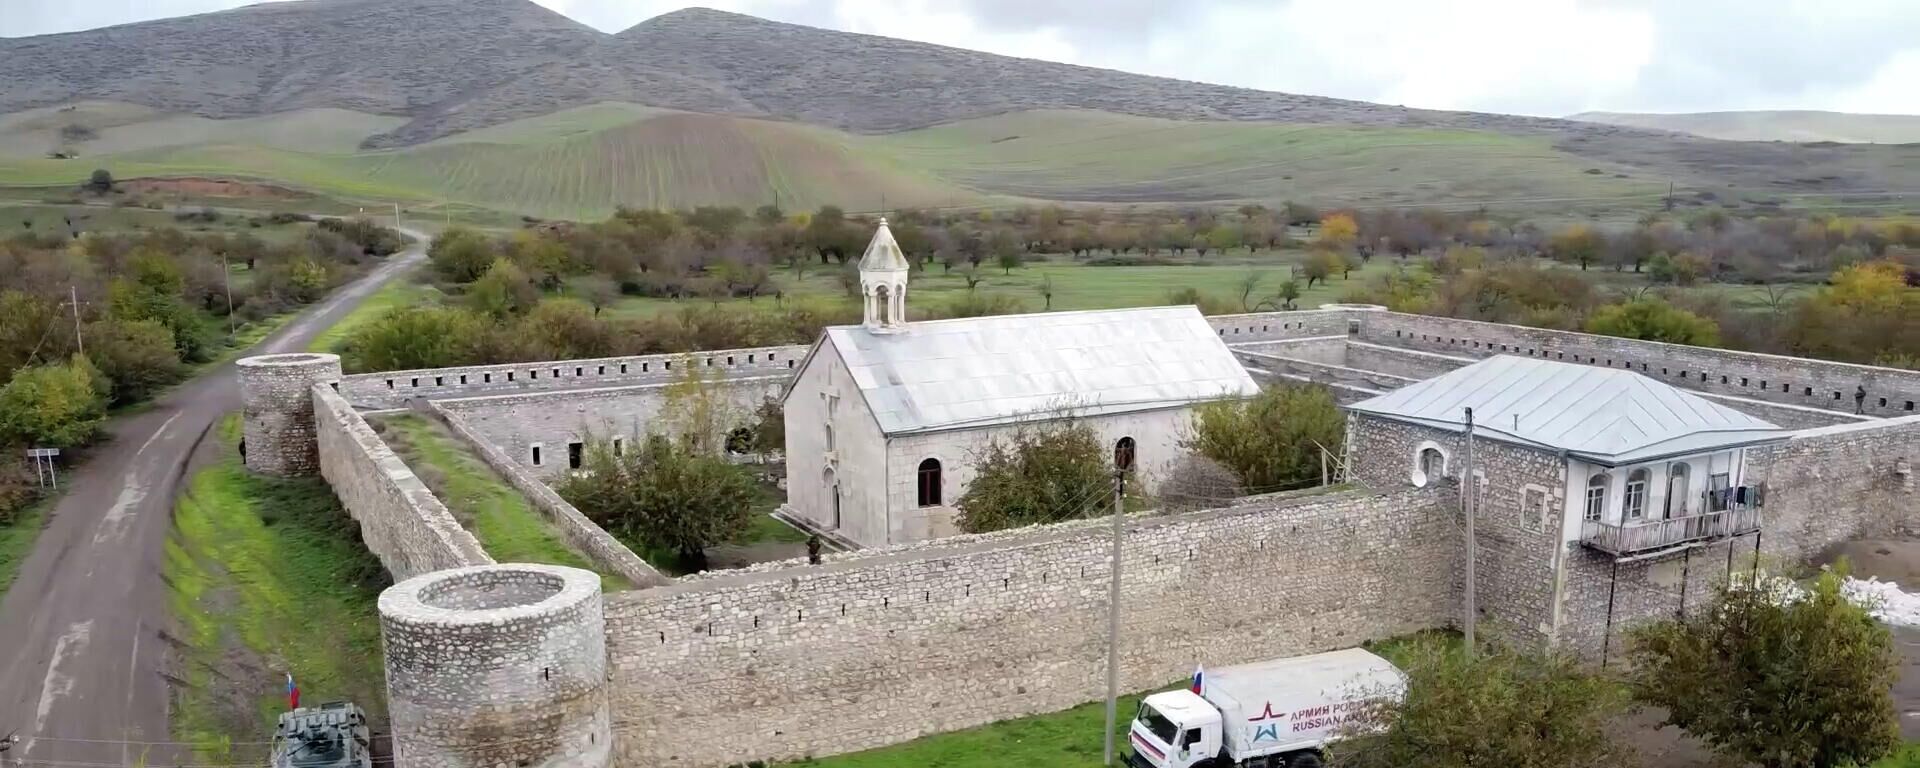 Российские миротворцы обеспечили безопасное посещение более 50 паломникам в монастырь Амарас в Нагорном Карабахе - Sputnik Армения, 1920, 02.11.2021